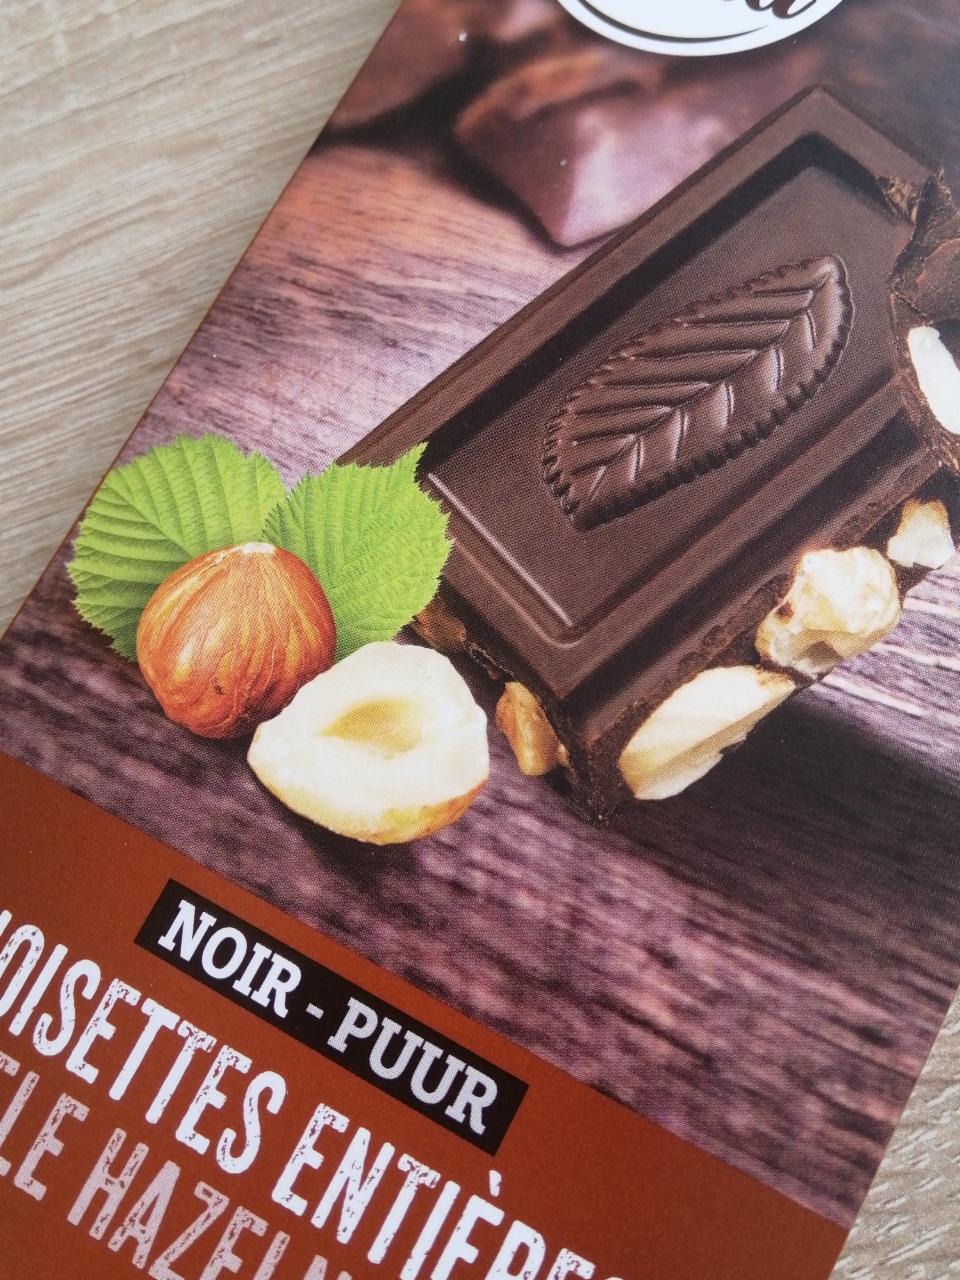 Fotografie - Chocolat Noir noisettes entières Carrefour